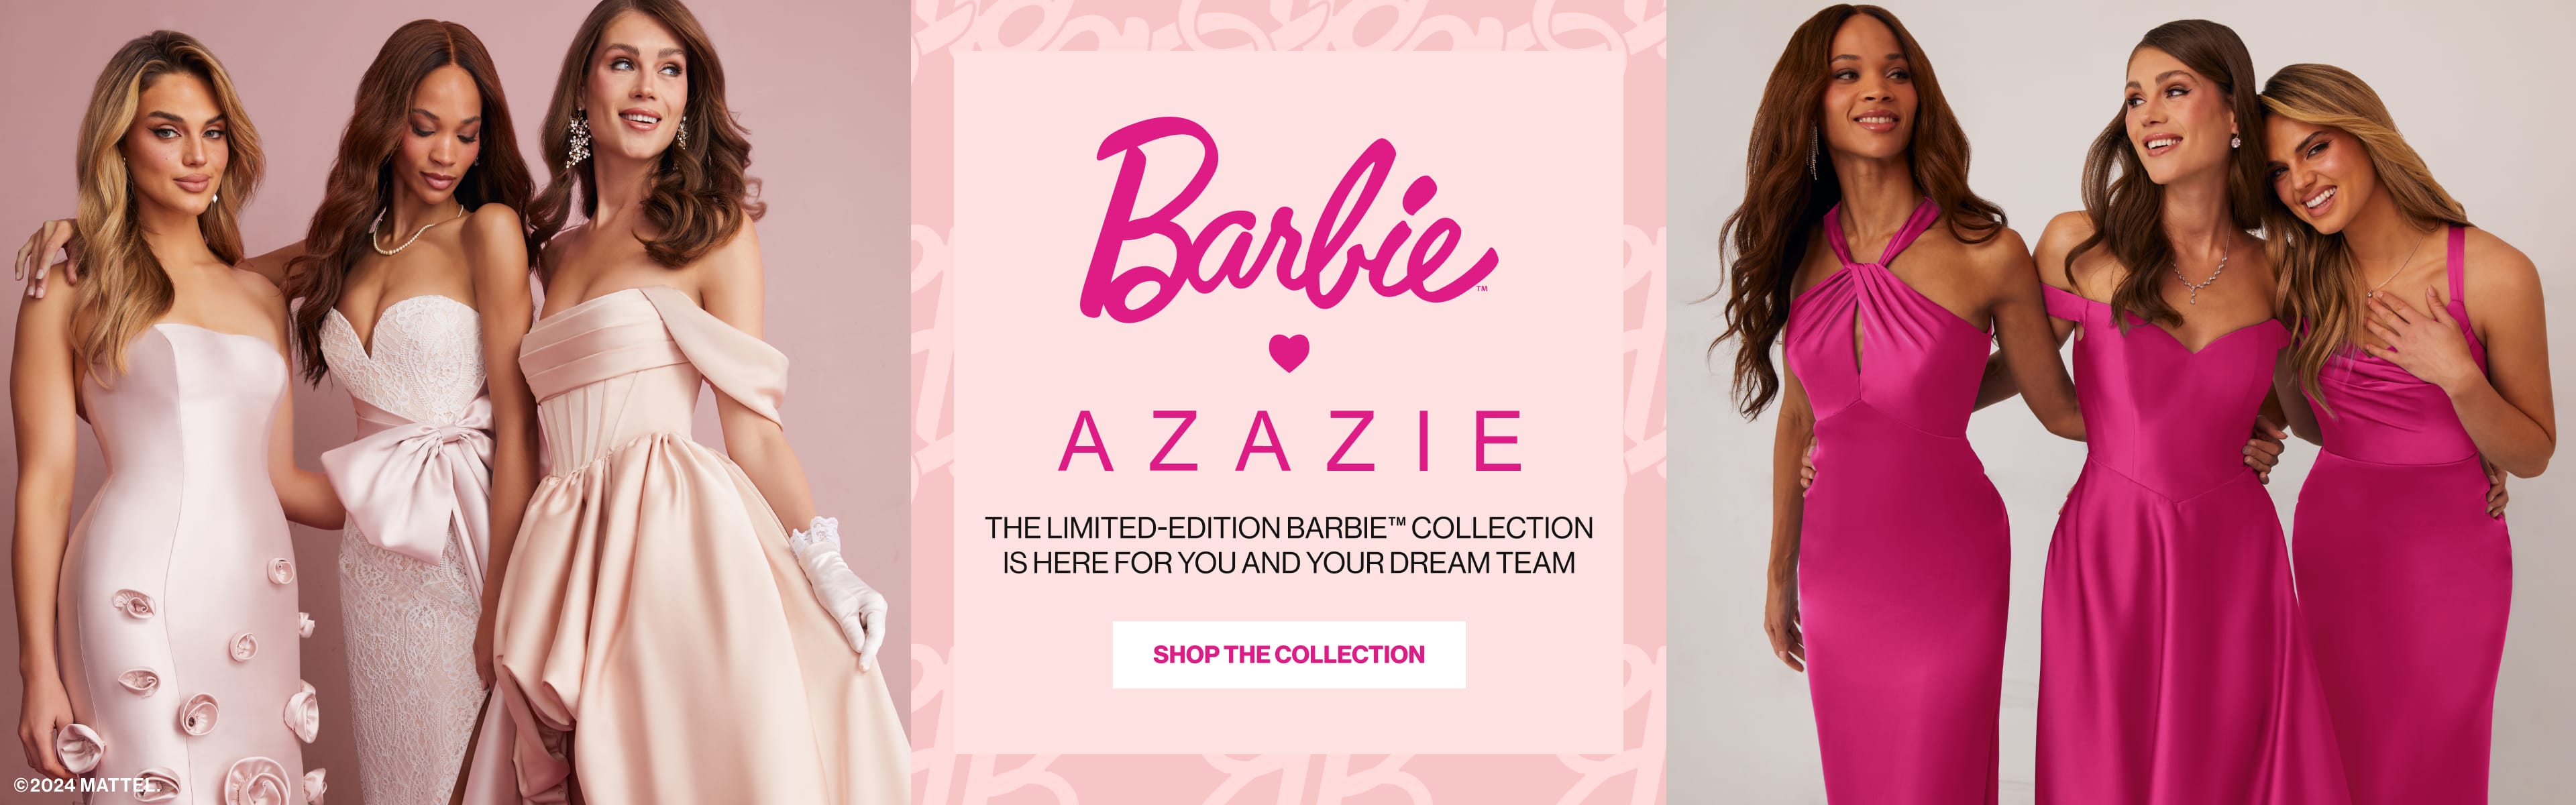 Barbie Azazie